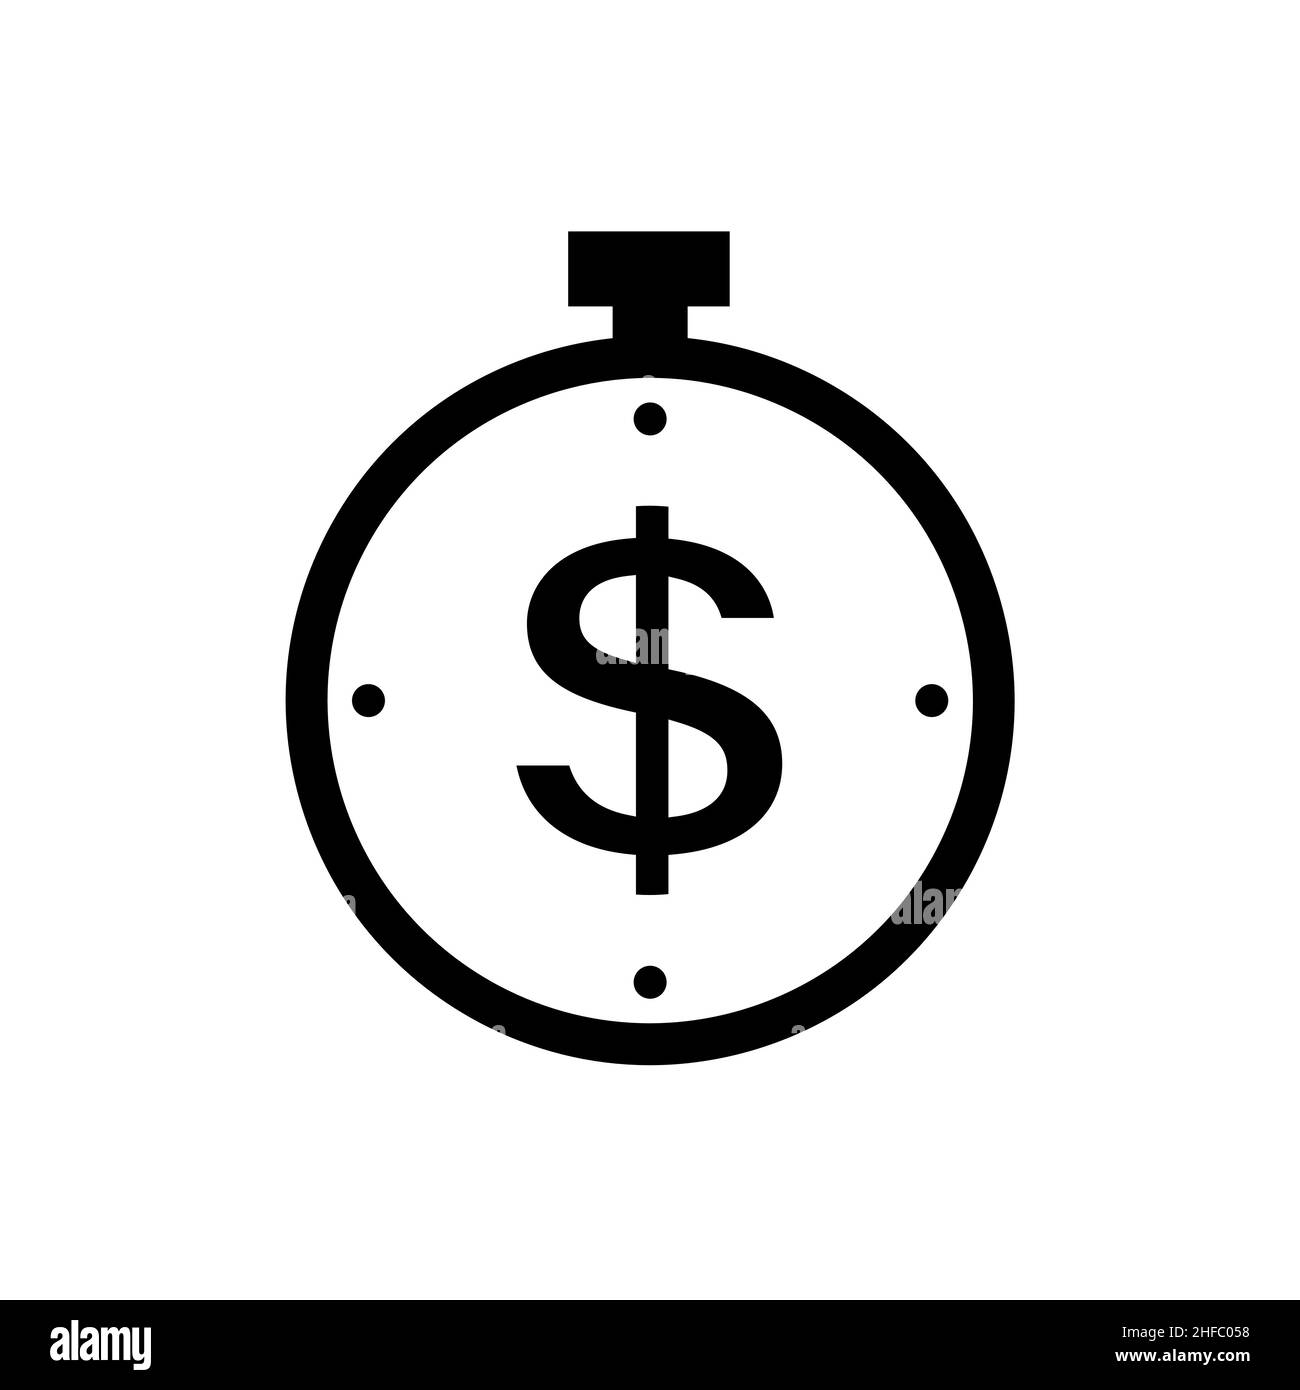 Chronomètre avec symbole dollar en forme de plat.Symbole de transaction ou de transfert d'argent rapide isolé sur blanc.Simple icône de paiement en noir le temps est l'argent Illustration de Vecteur